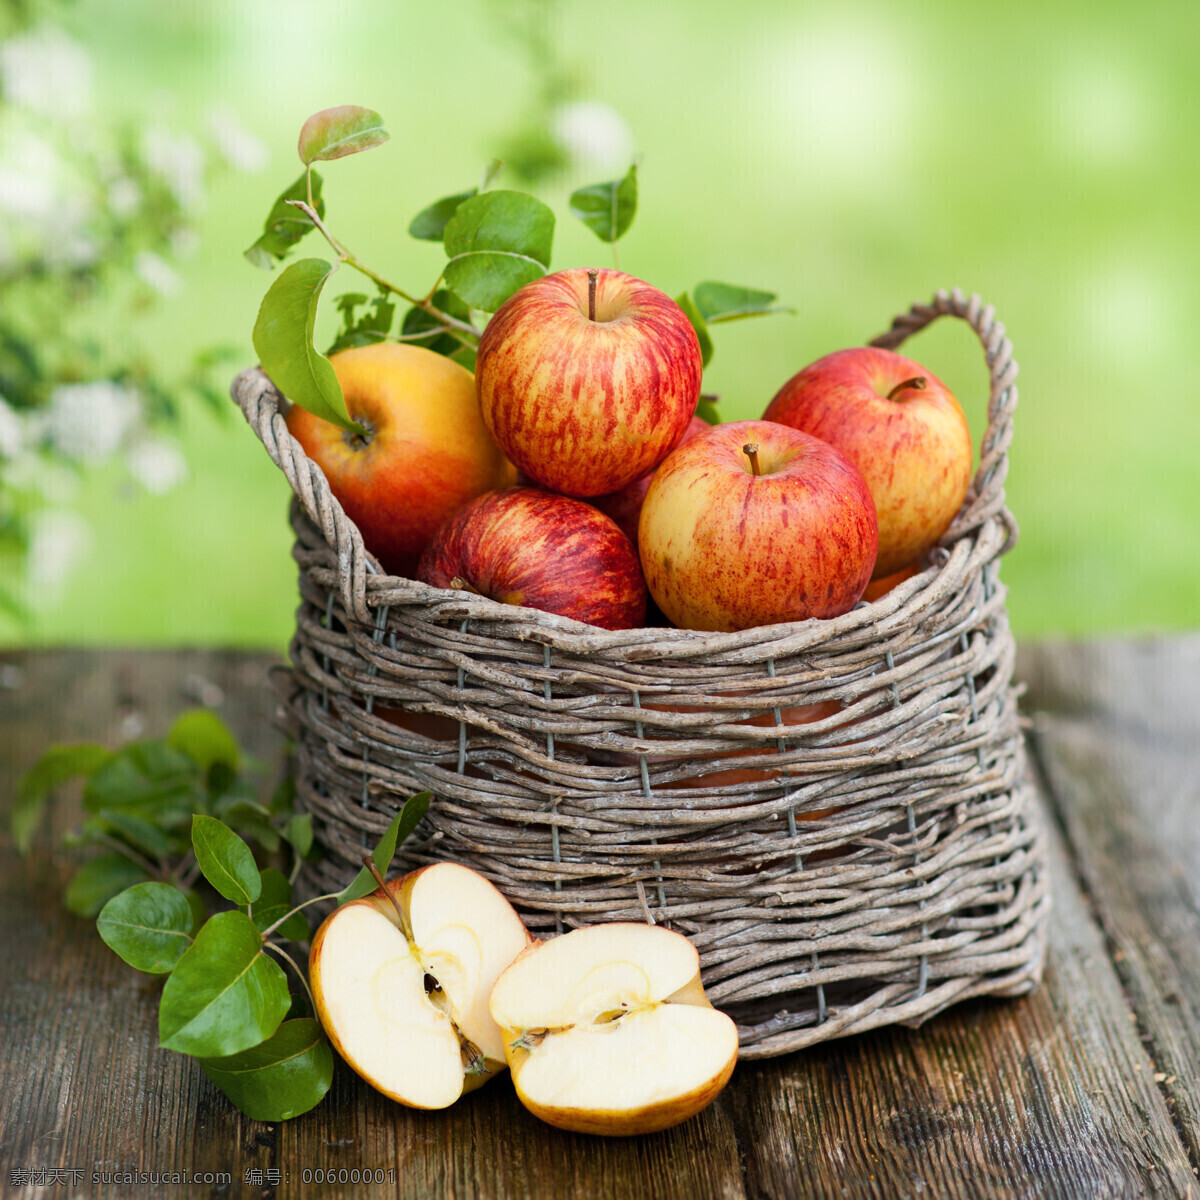 高清 苹果 苹果素材 苹果摄影 篮子 果篮 水果 水果素材 树叶 叶子 木板 木纹 苹果图片 餐饮美食